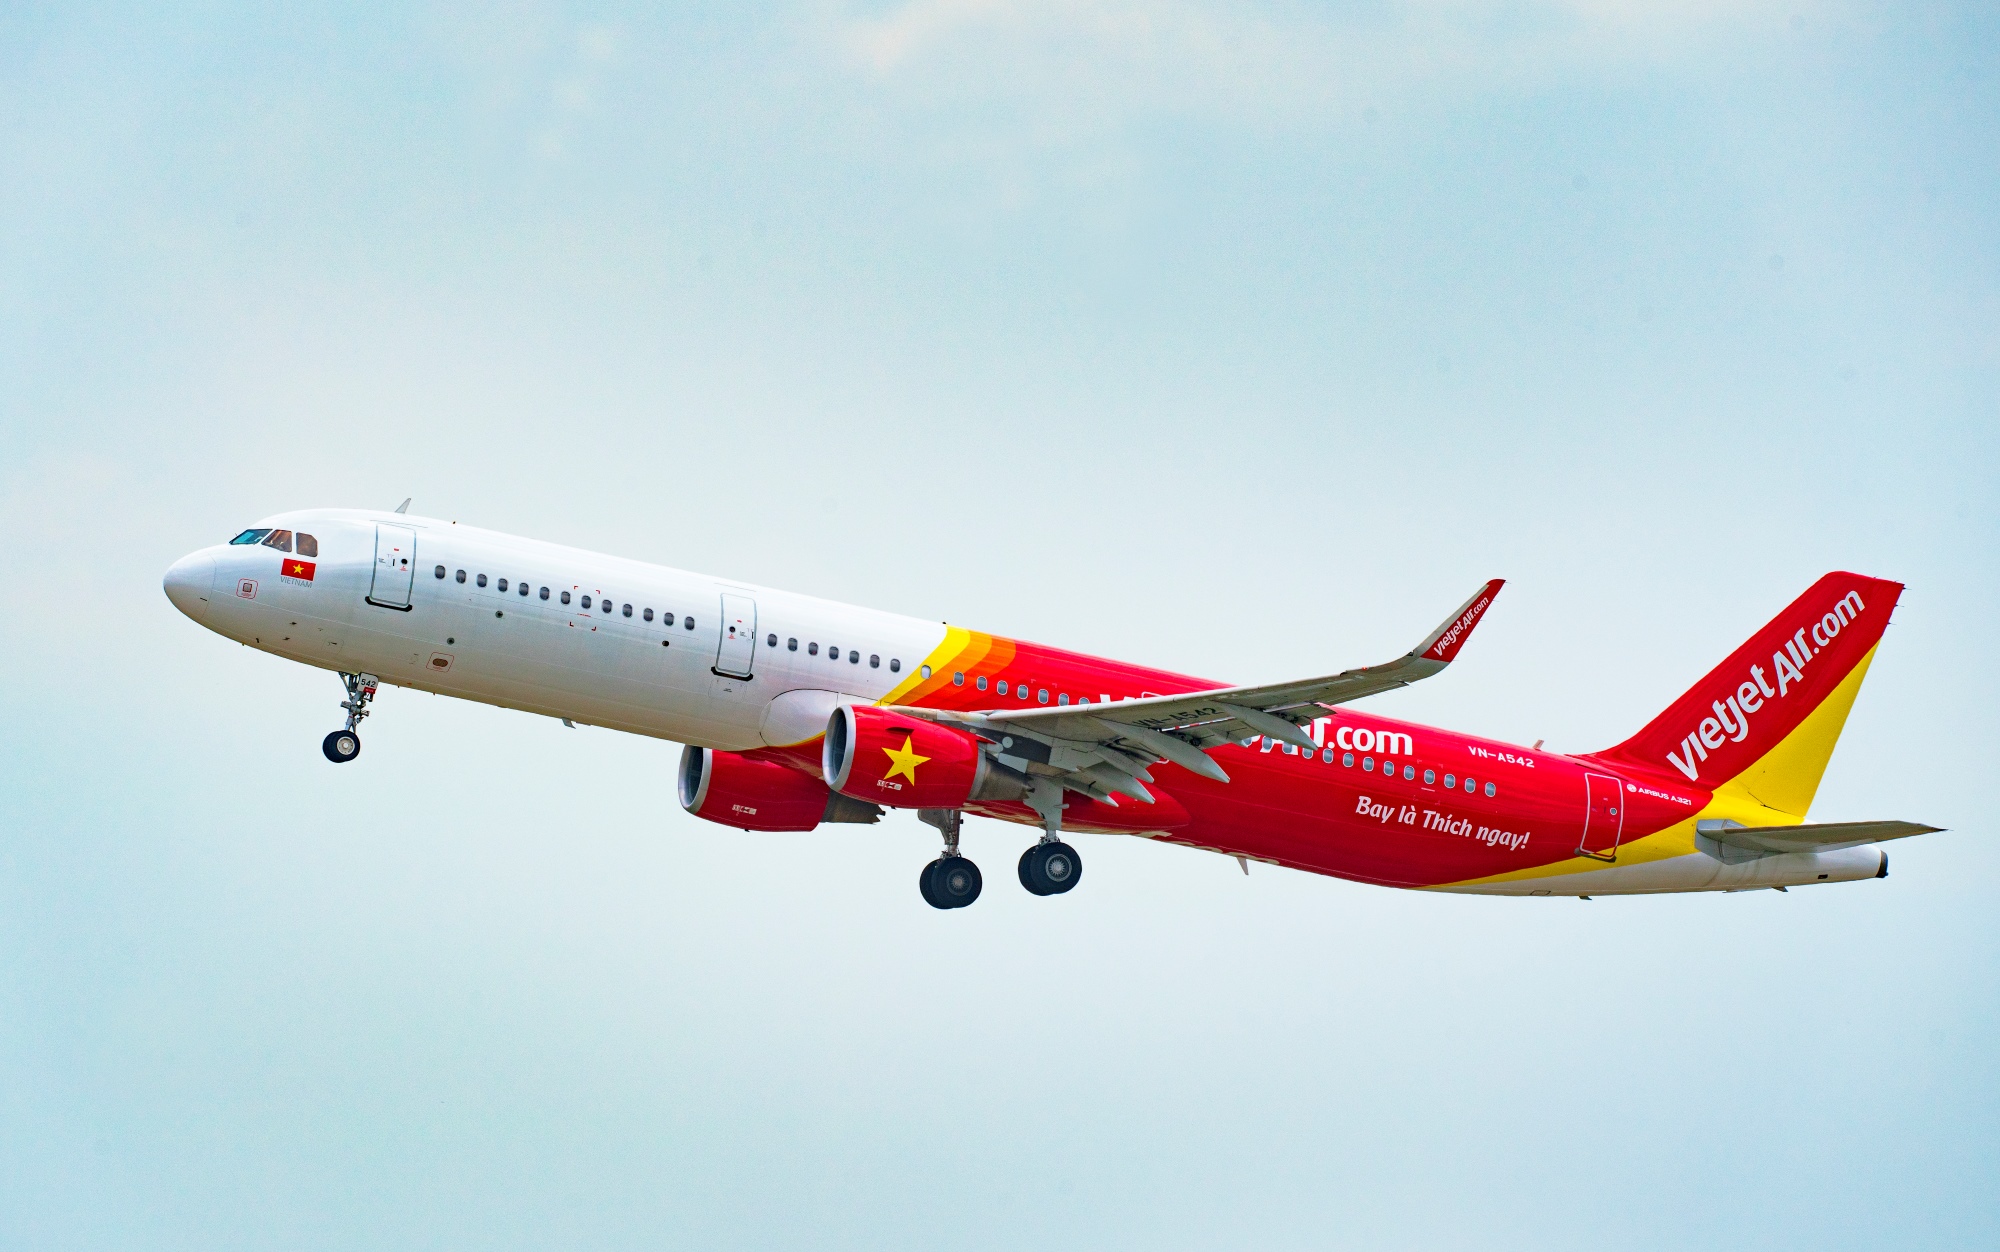 Tin vui: Vietjet mở thêm 5 đường bay quốc tế mới đến Đài Bắc, Hong Kong, Busan, Adelaide, Perth giá chỉ từ 0 đồng - Ảnh 1.